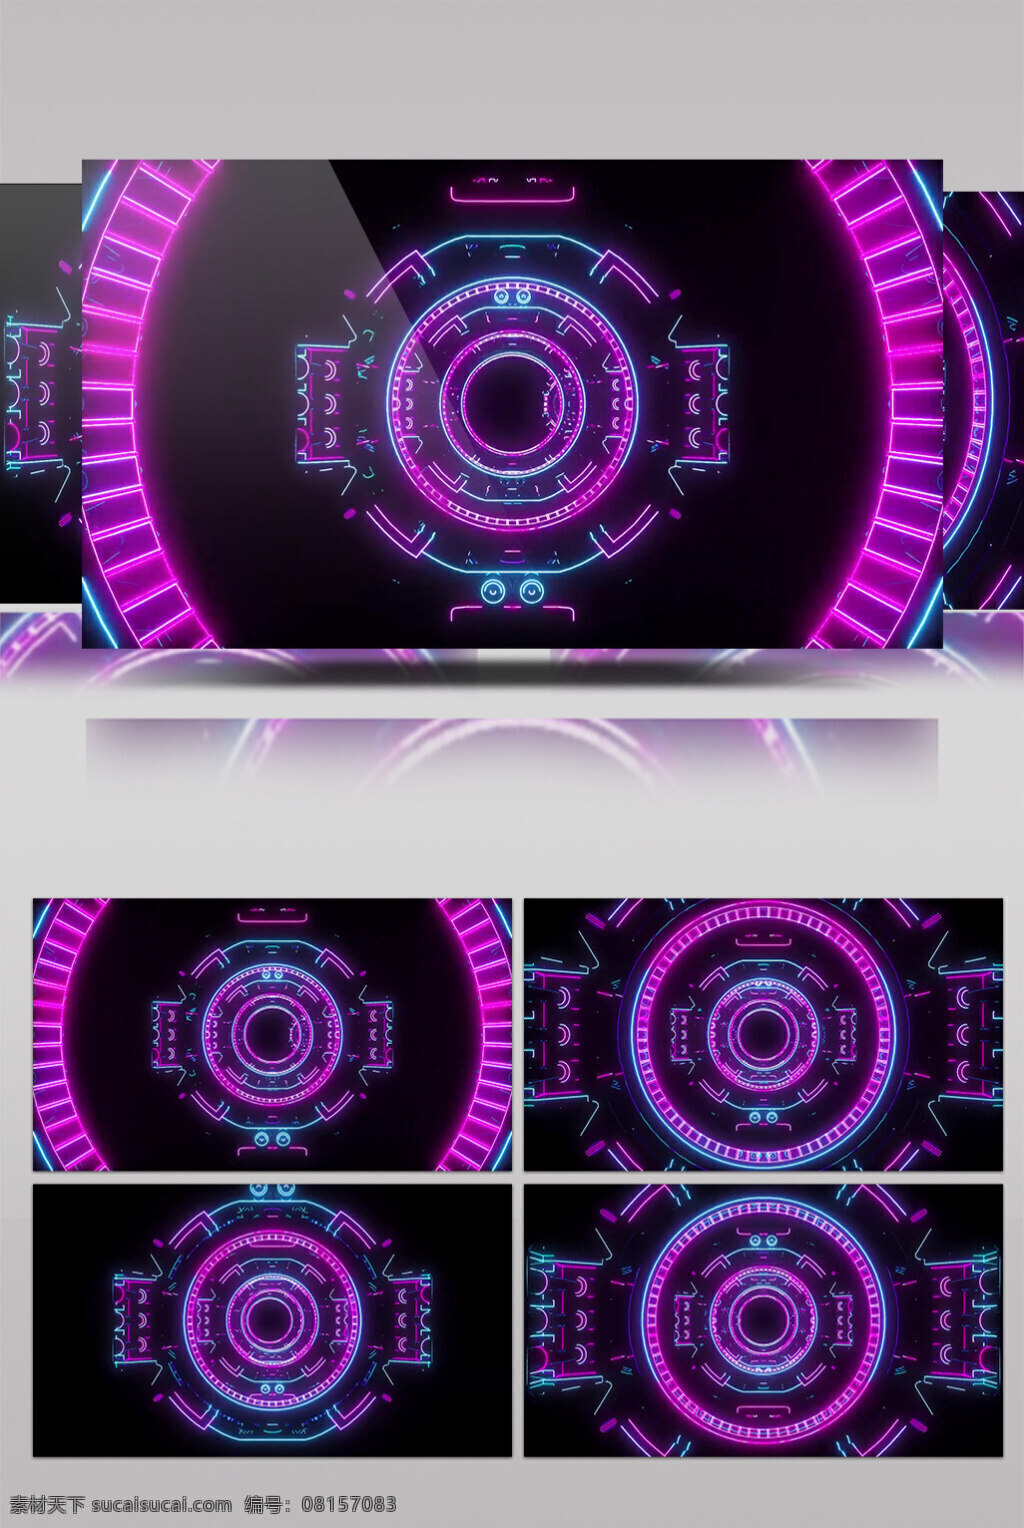 紫色 光轮 动态 视频 时间轮轴 光紫色炫酷 动态星光 华丽流转 光芒四射 3d视频素材 特效视频素材